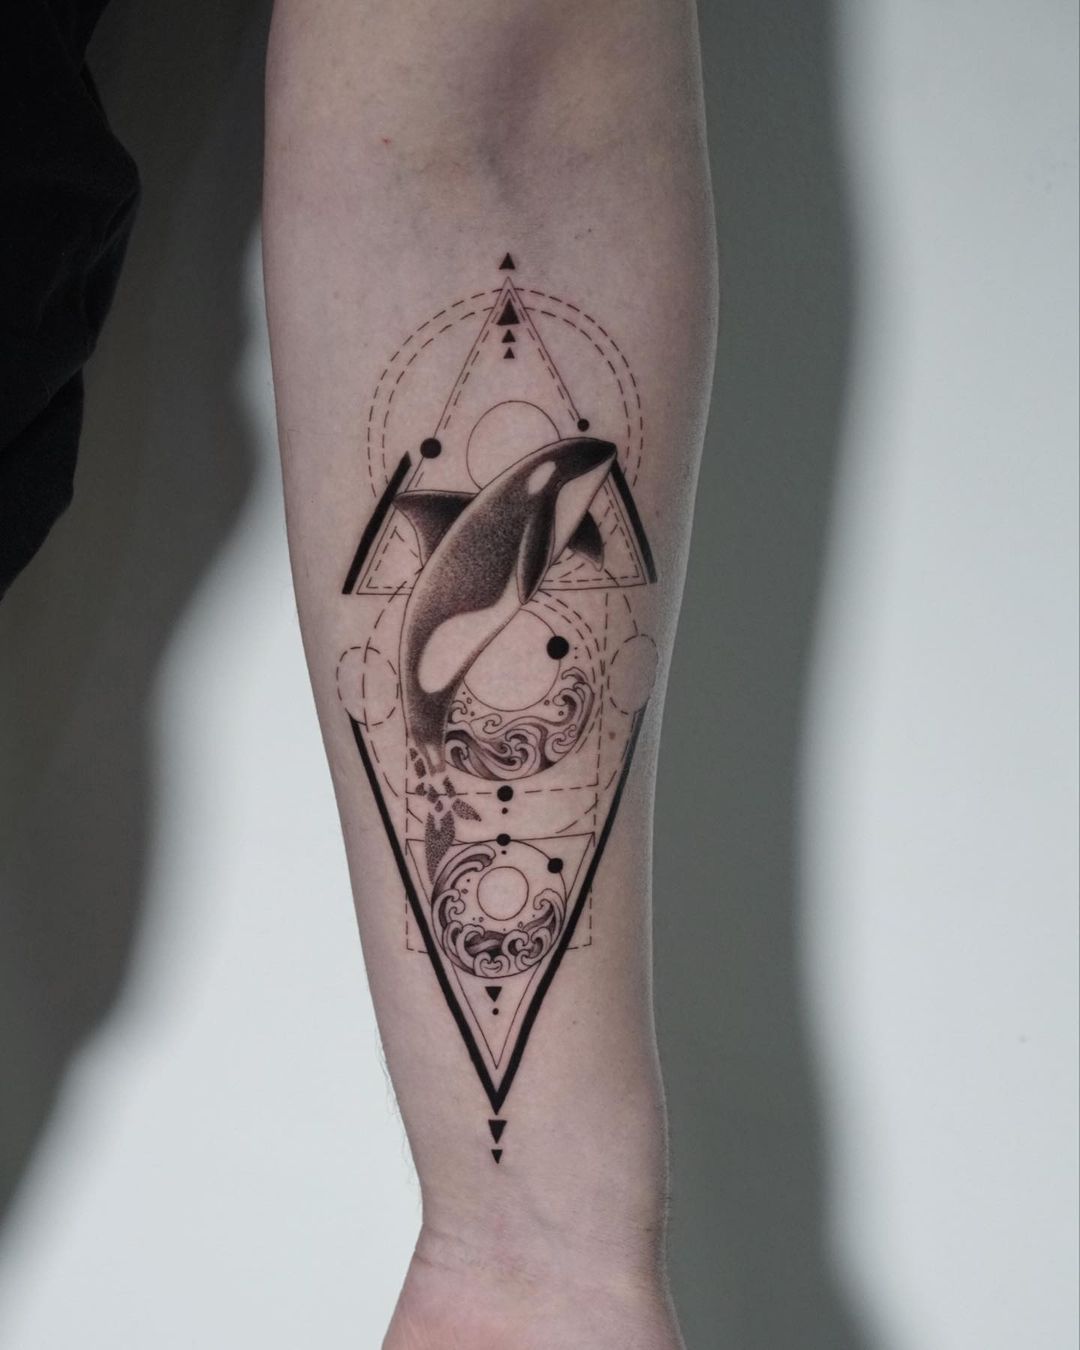 Orca whale tattoo by anaisurquia